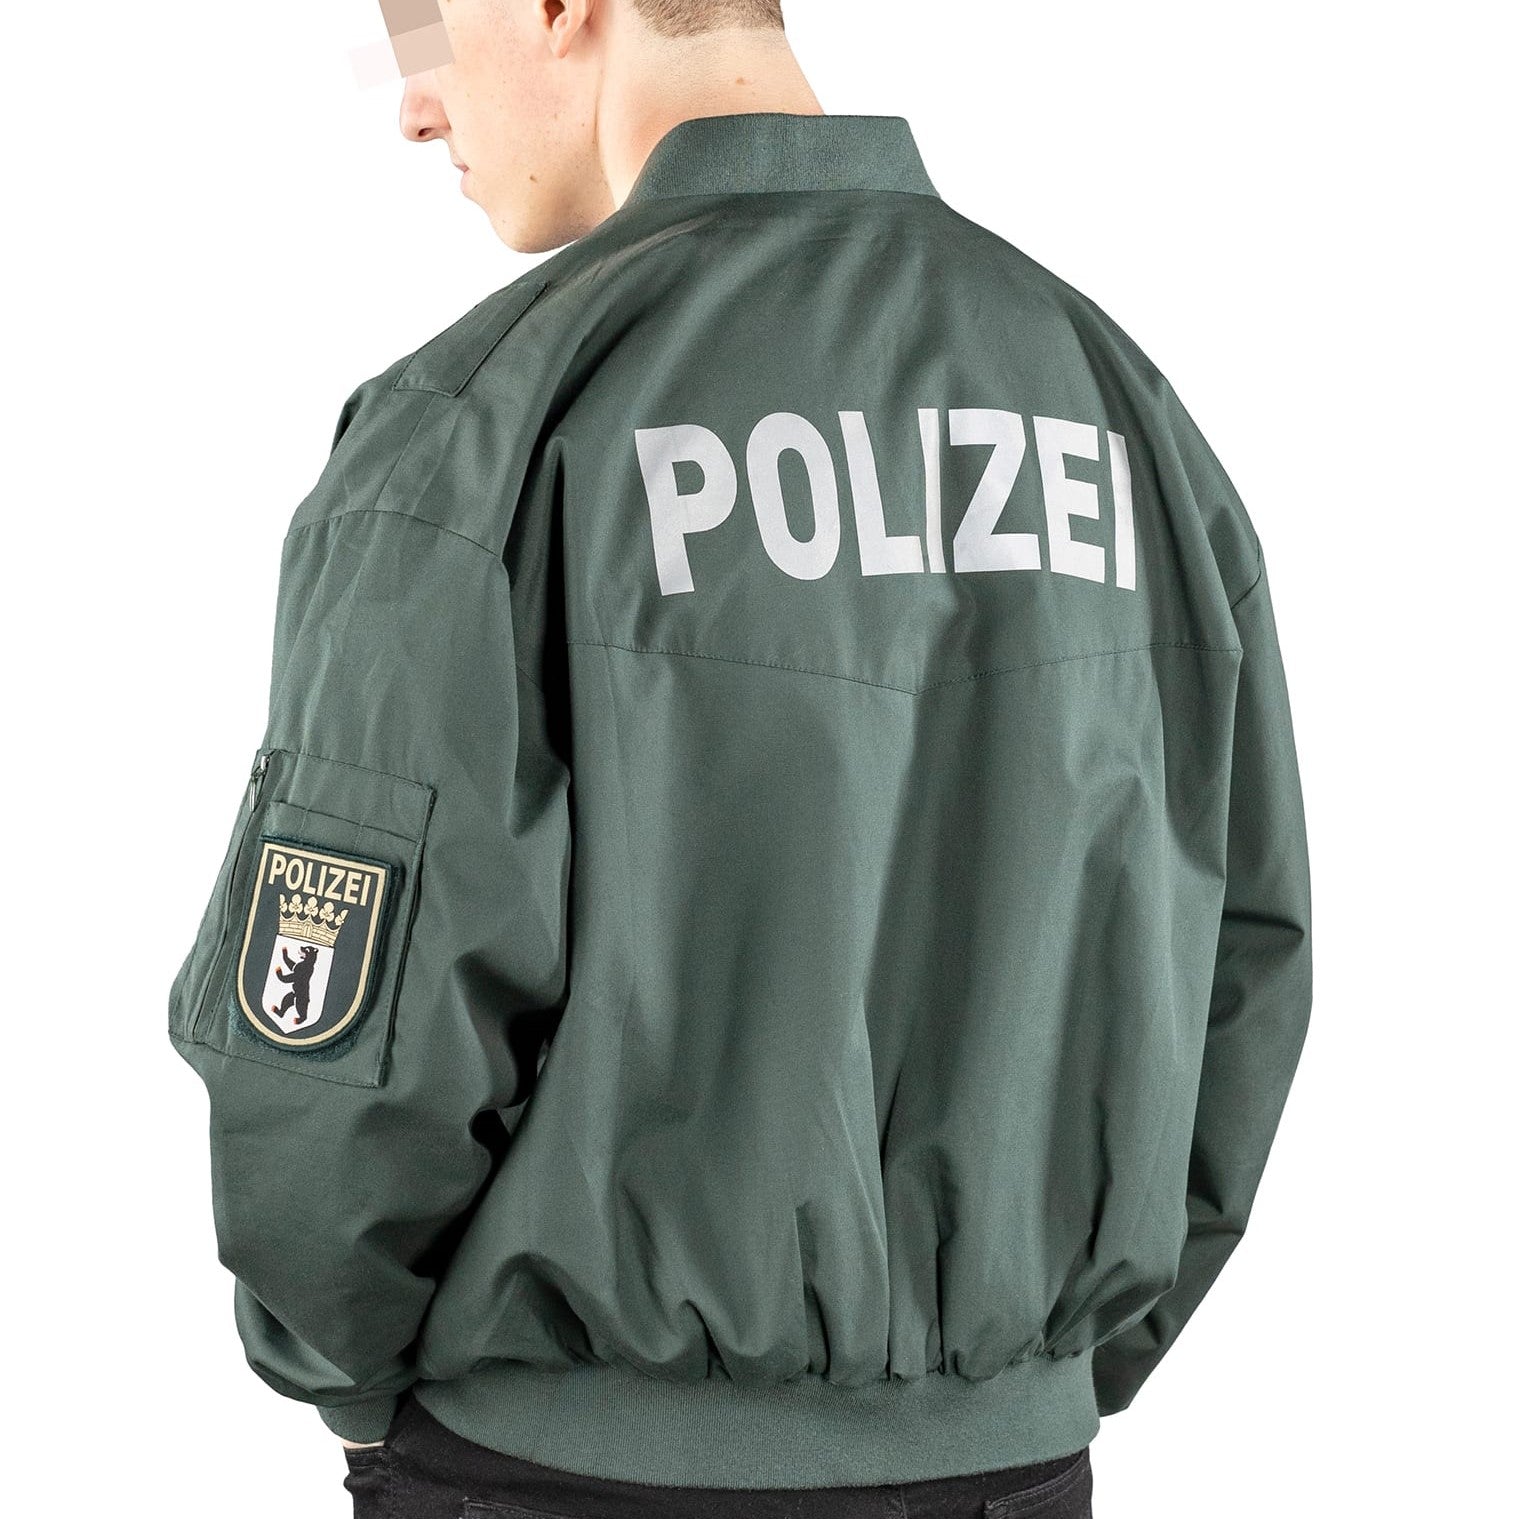 Polizei & ZOLL – KommandoStore